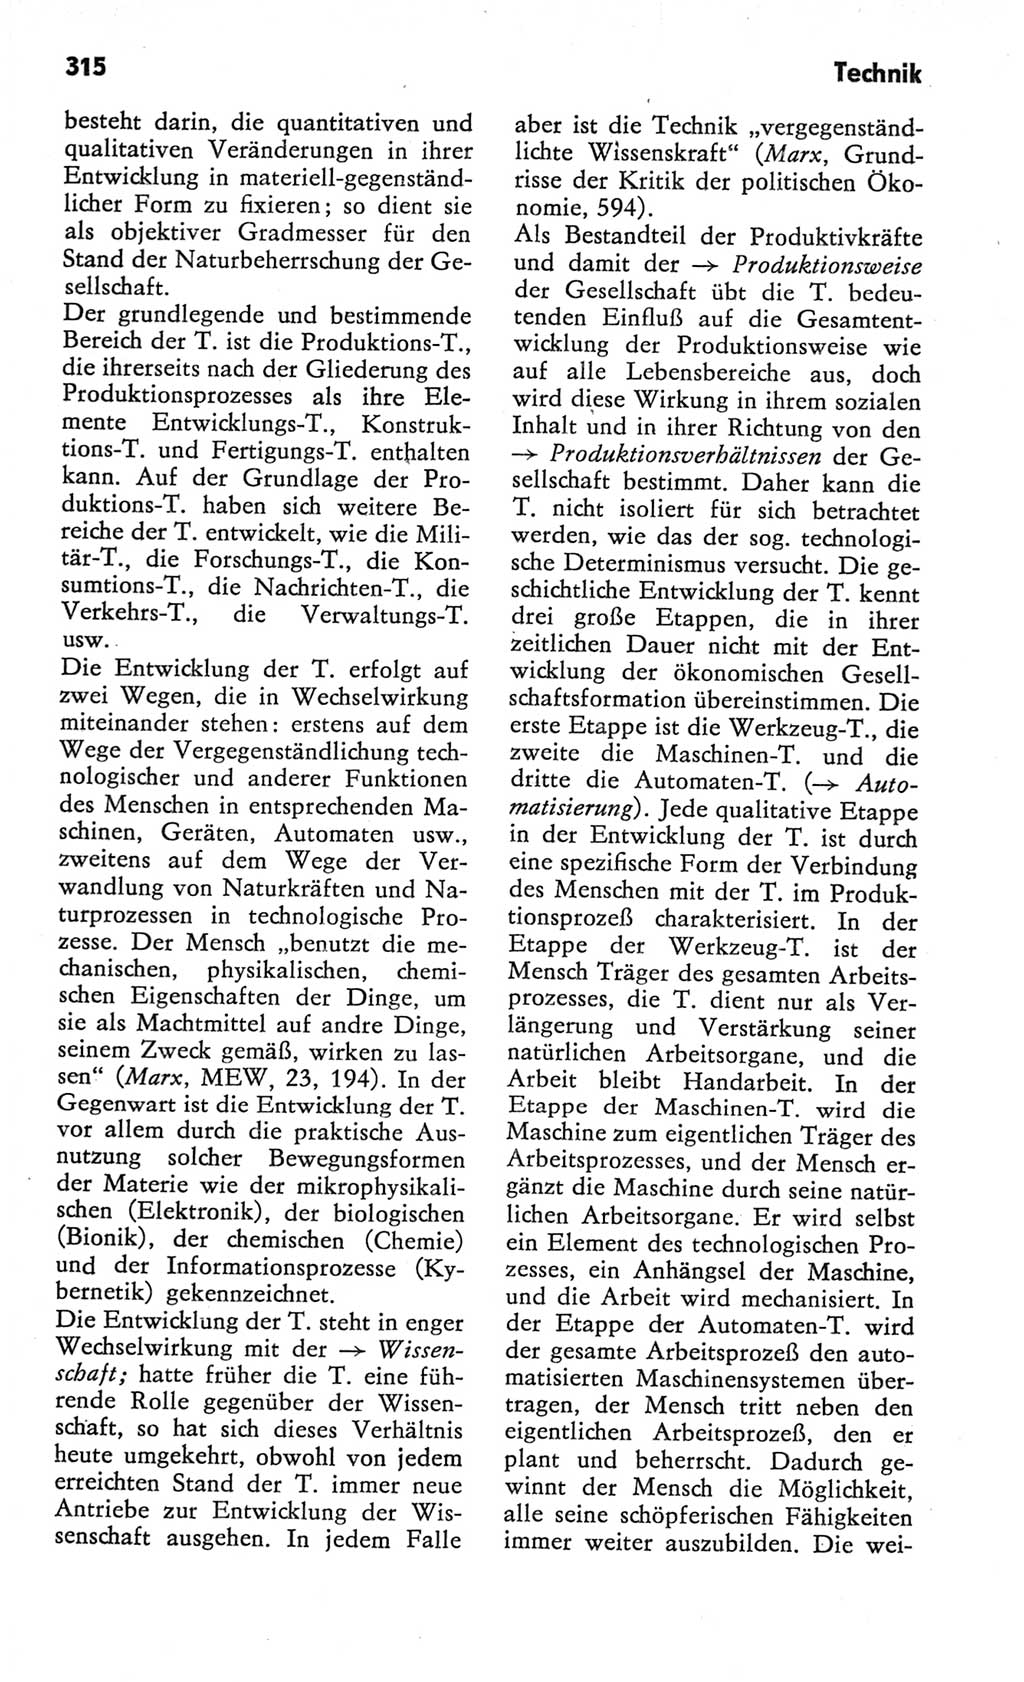 Kleines Wörterbuch der marxistisch-leninistischen Philosophie [Deutsche Demokratische Republik (DDR)] 1982, Seite 315 (Kl. Wb. ML Phil. DDR 1982, S. 315)